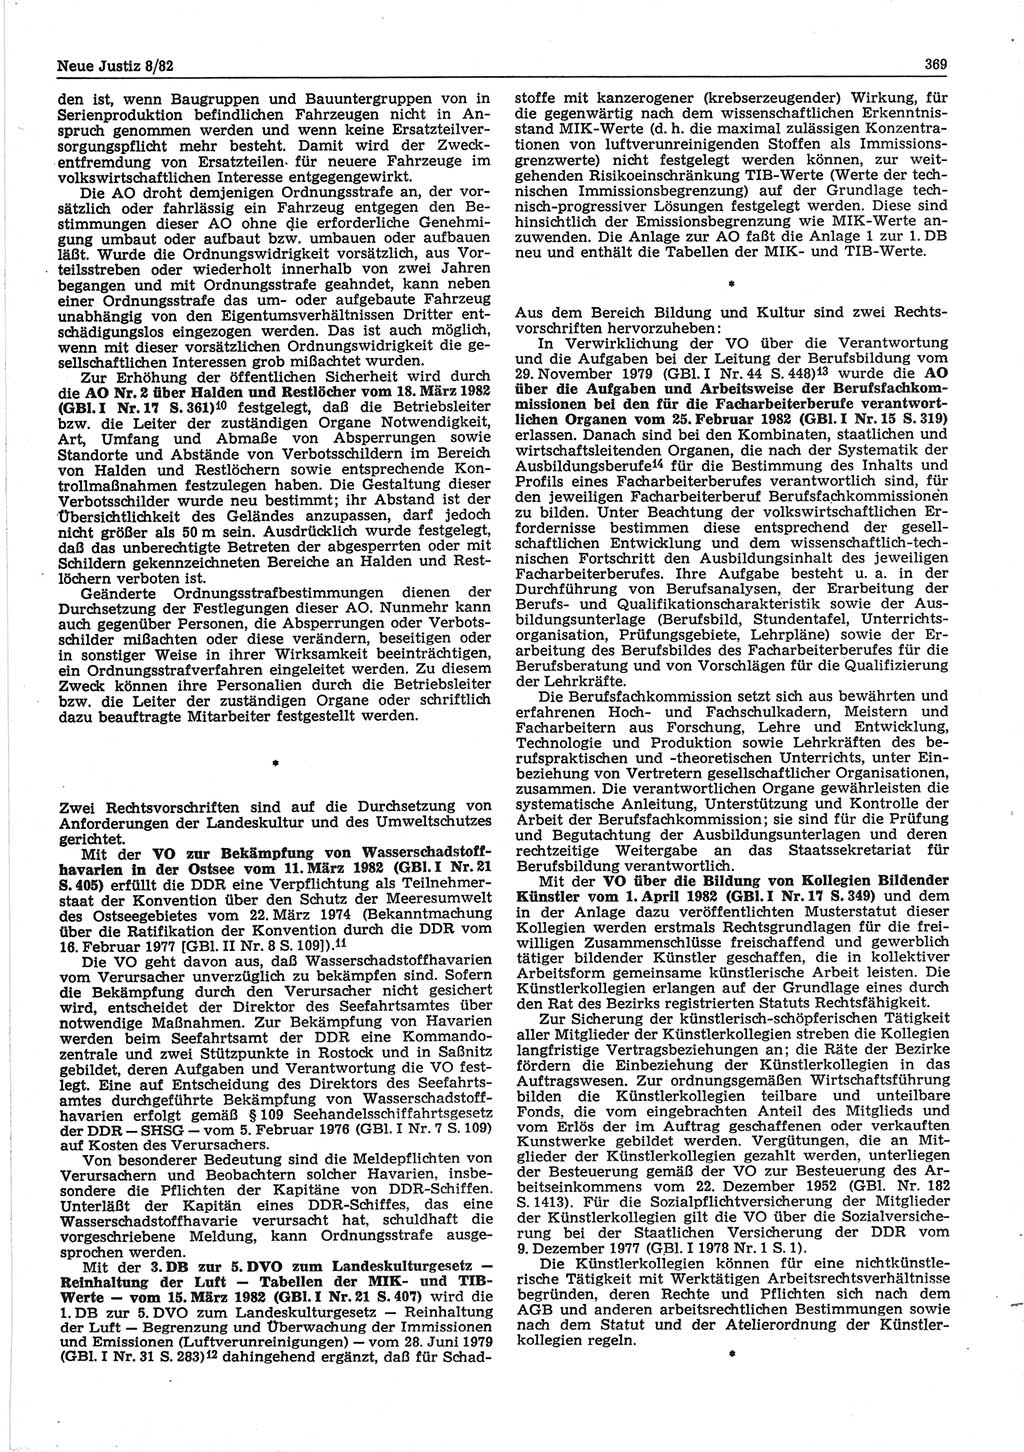 Neue Justiz (NJ), Zeitschrift für sozialistisches Recht und Gesetzlichkeit [Deutsche Demokratische Republik (DDR)], 36. Jahrgang 1982, Seite 369 (NJ DDR 1982, S. 369)